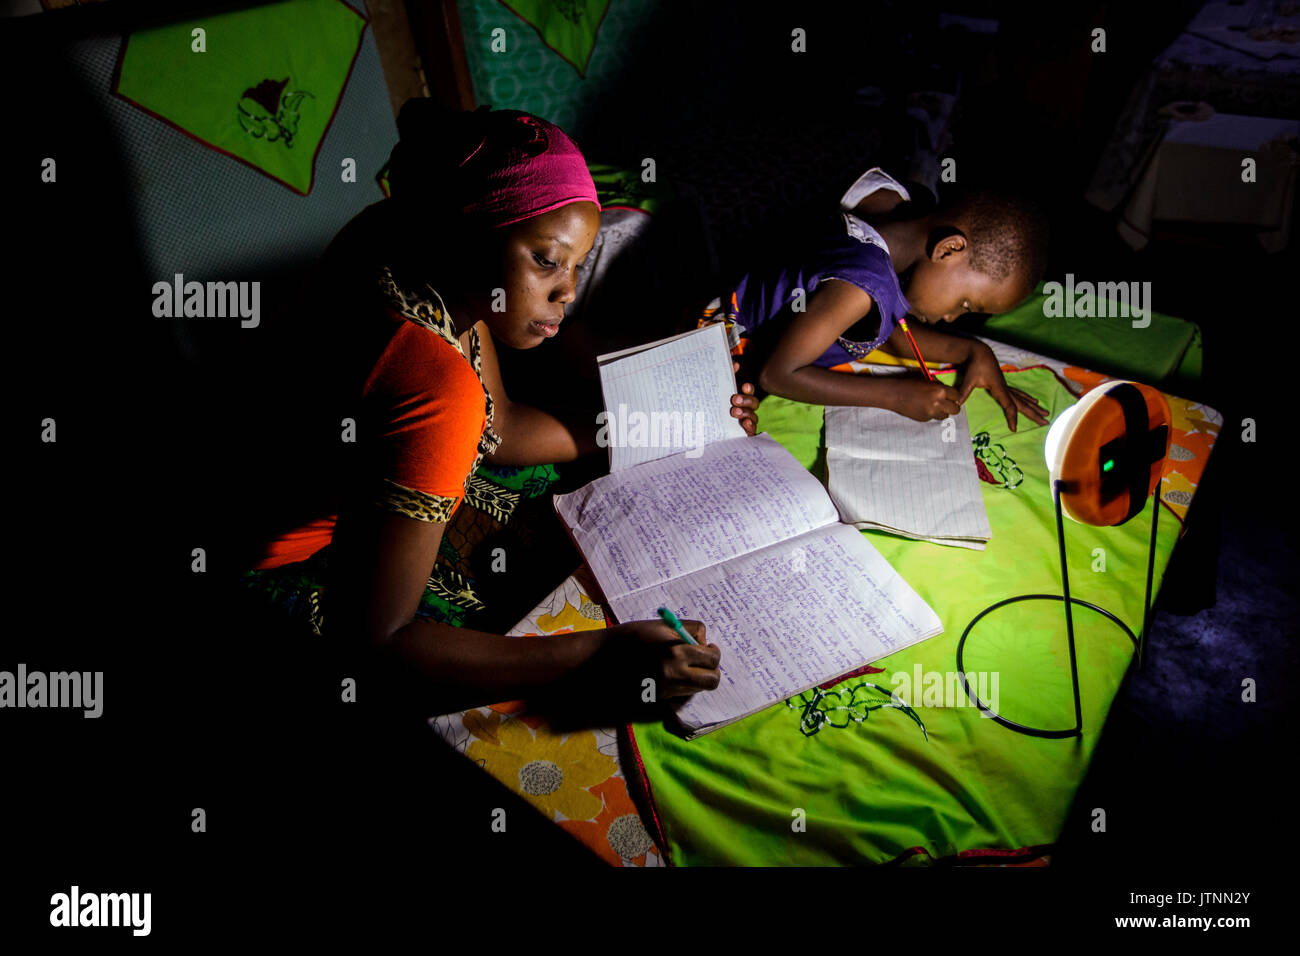 Mforo, Tansania, einem Dorf in der Nähe von Moshi, Tansania. Der Einsatz einer Solar Schwester solar Lantern mehrere von Solar Schwester Unternehmer Fatma Mzirayâs Kinder nachts studieren. Ihre ältere Tochter Zainabu Ramadhani Alter 19 ist auf der linken und mittleren Tochter Sabrina Ramadhani, Alter 8 ist auf der rechten Seite. Fatma Mziray ist ein Solar Schwester Unternehmer Wer verkauft beide Sauber cookstoves und Stockfoto